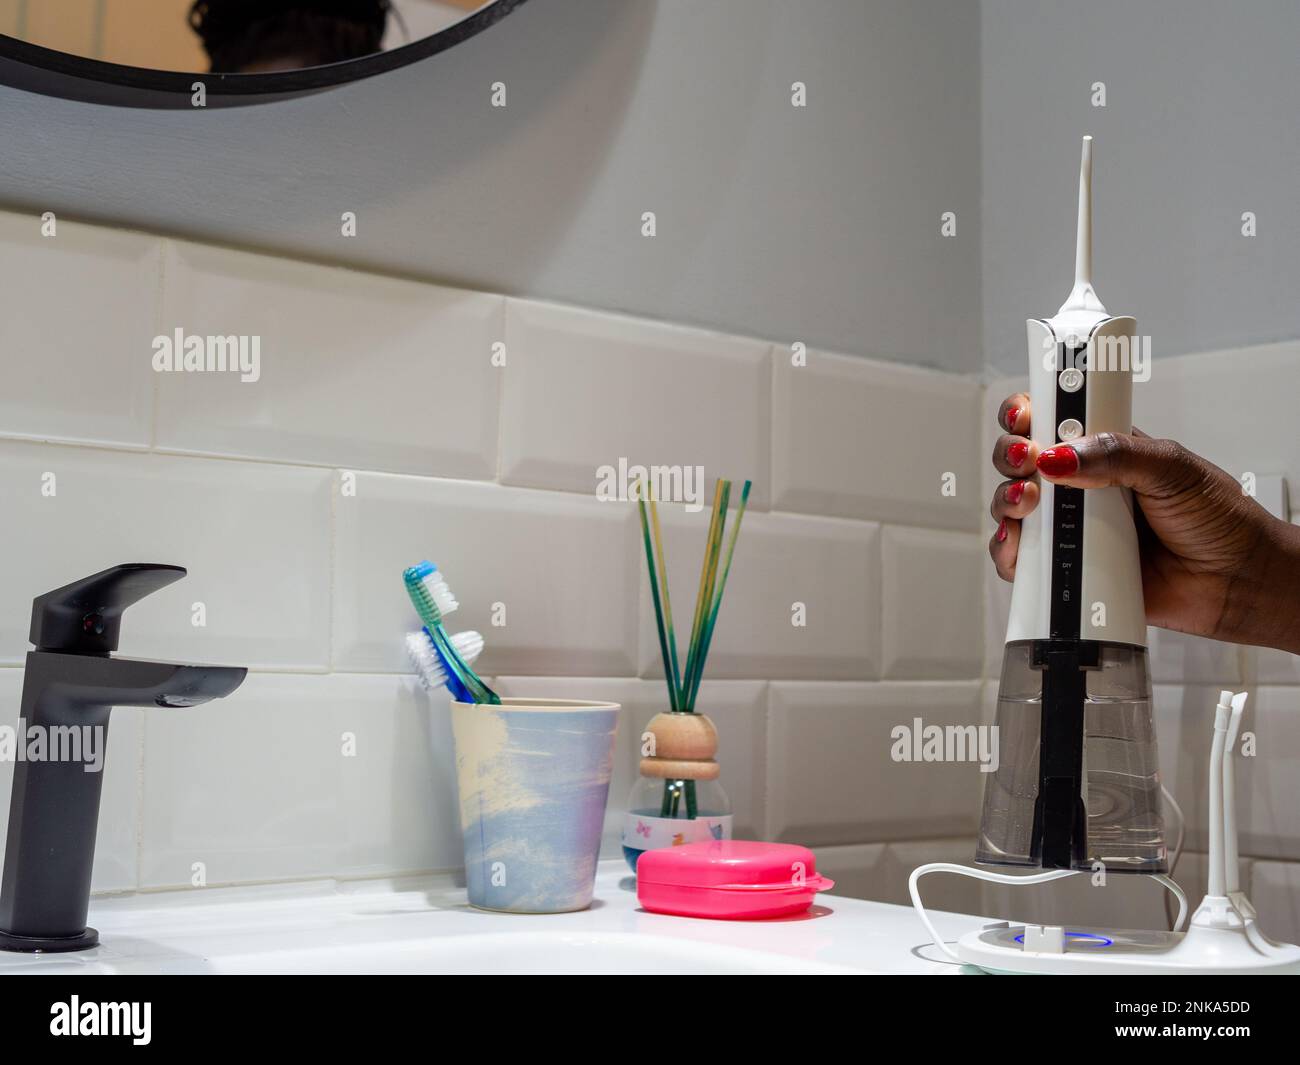 mujer joven que sostiene un hilo dental inalámbrico doméstico del agua en el lavabo del cuarto de baño Foto de stock